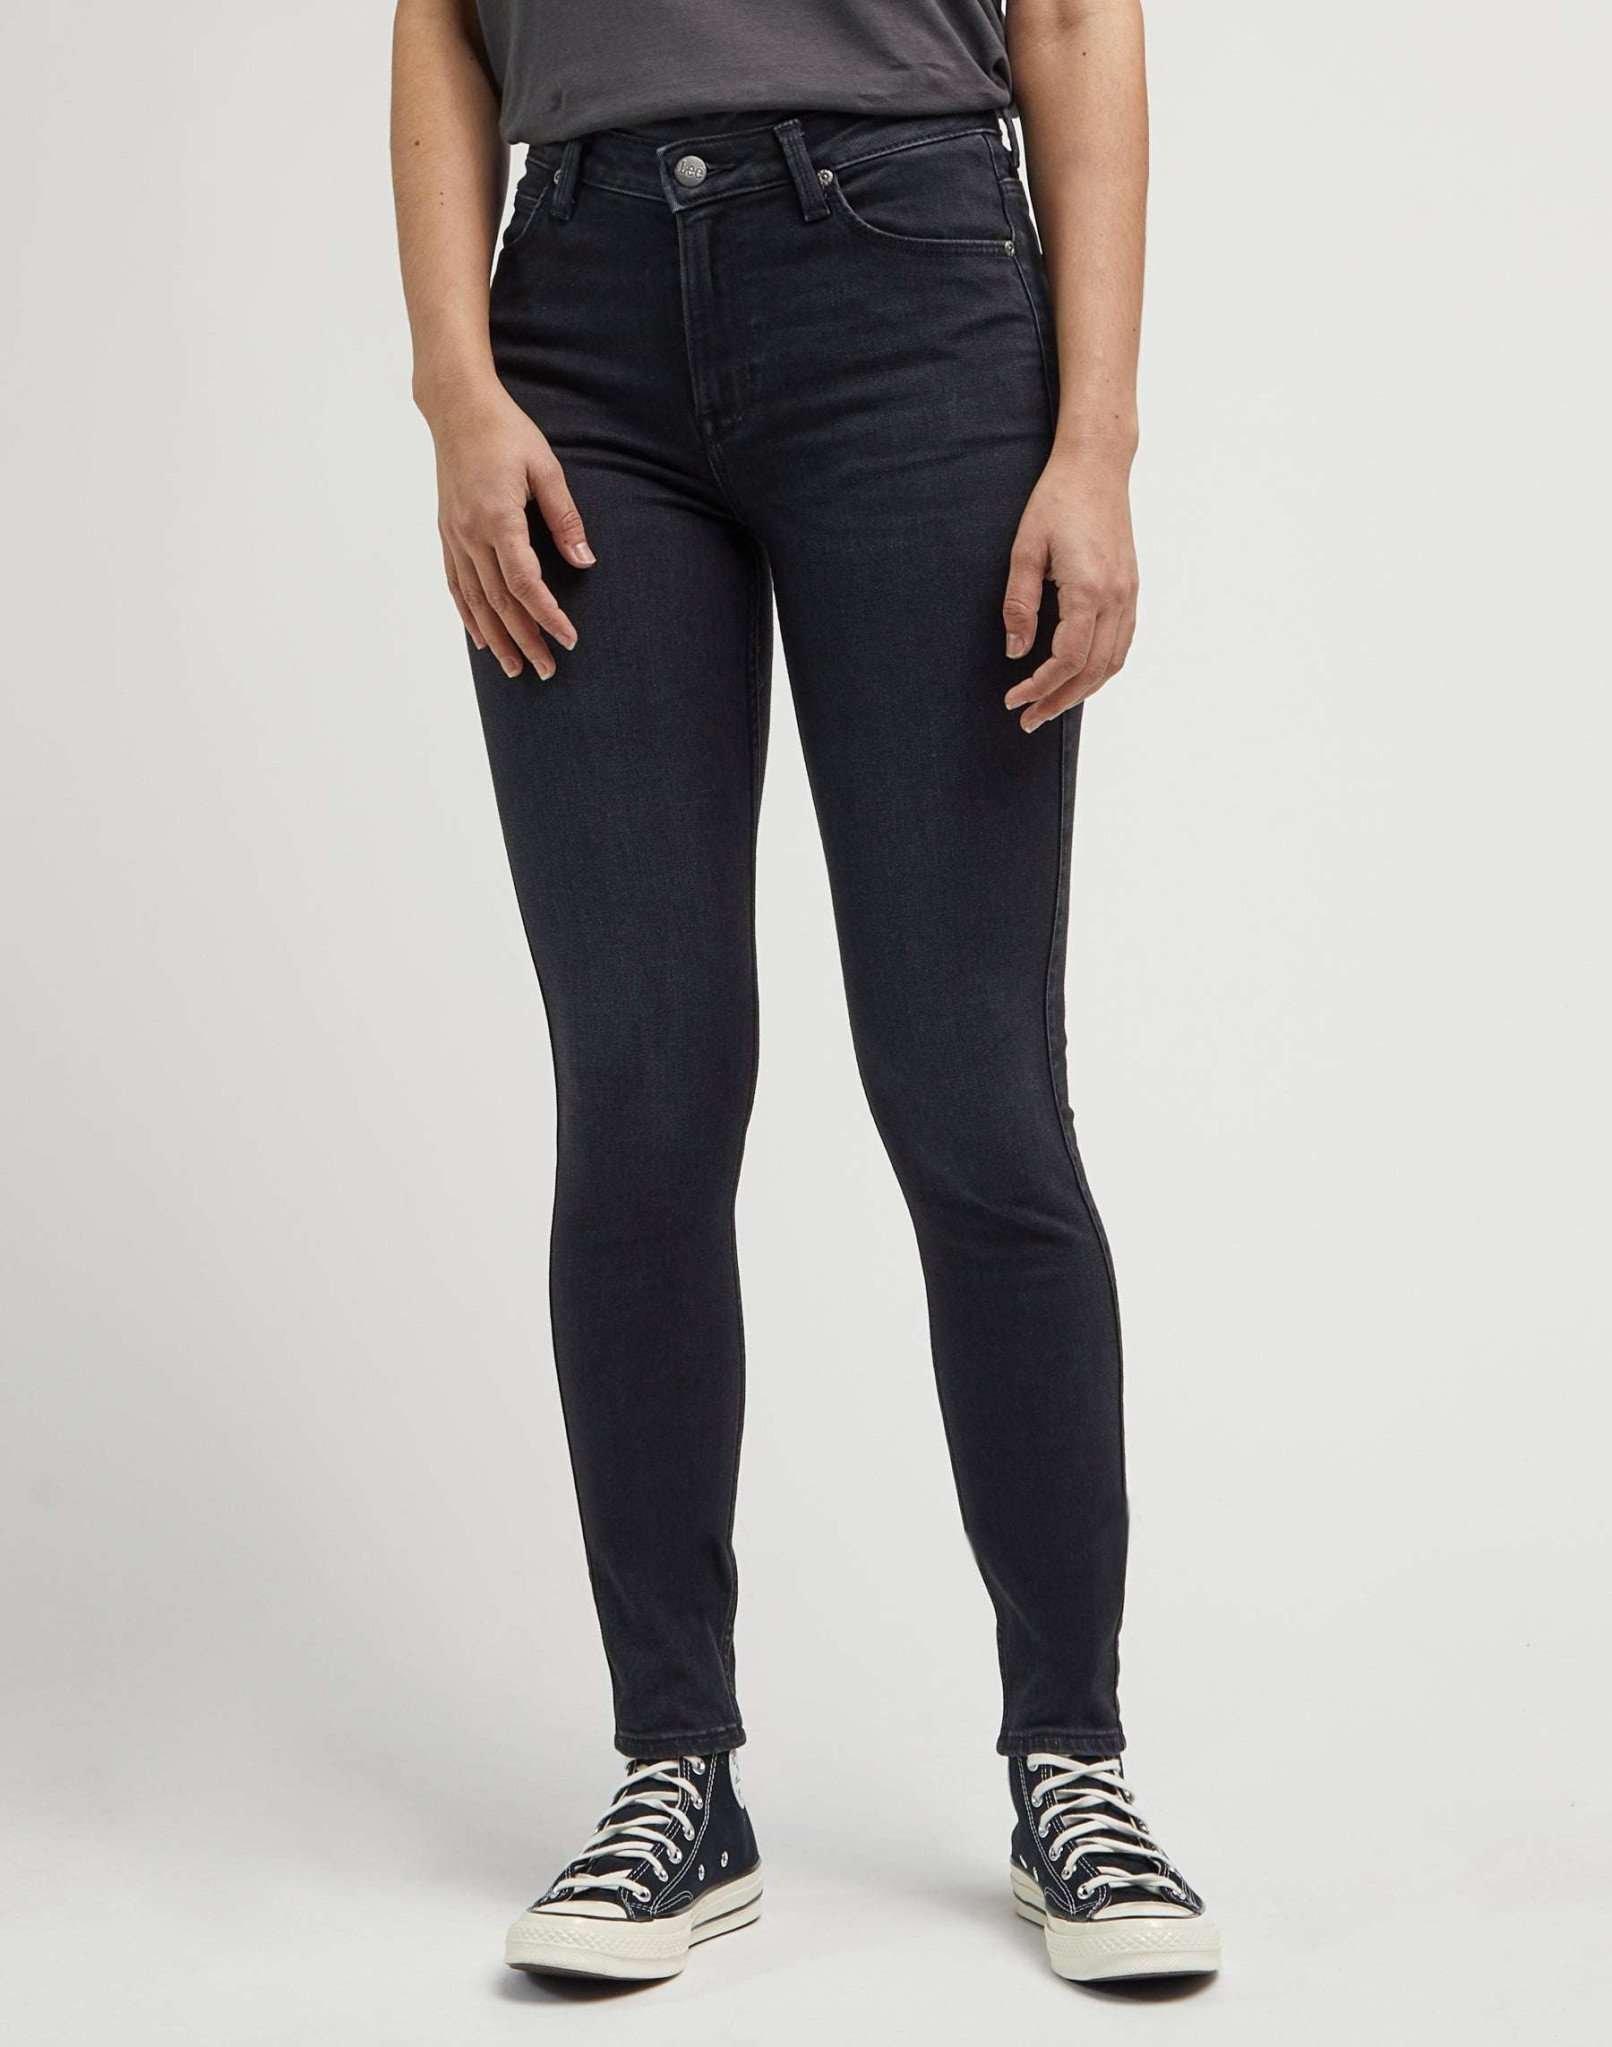 Jeans Skinny Fit Scarlett High Damen Schwarz L33/W28 von Lee